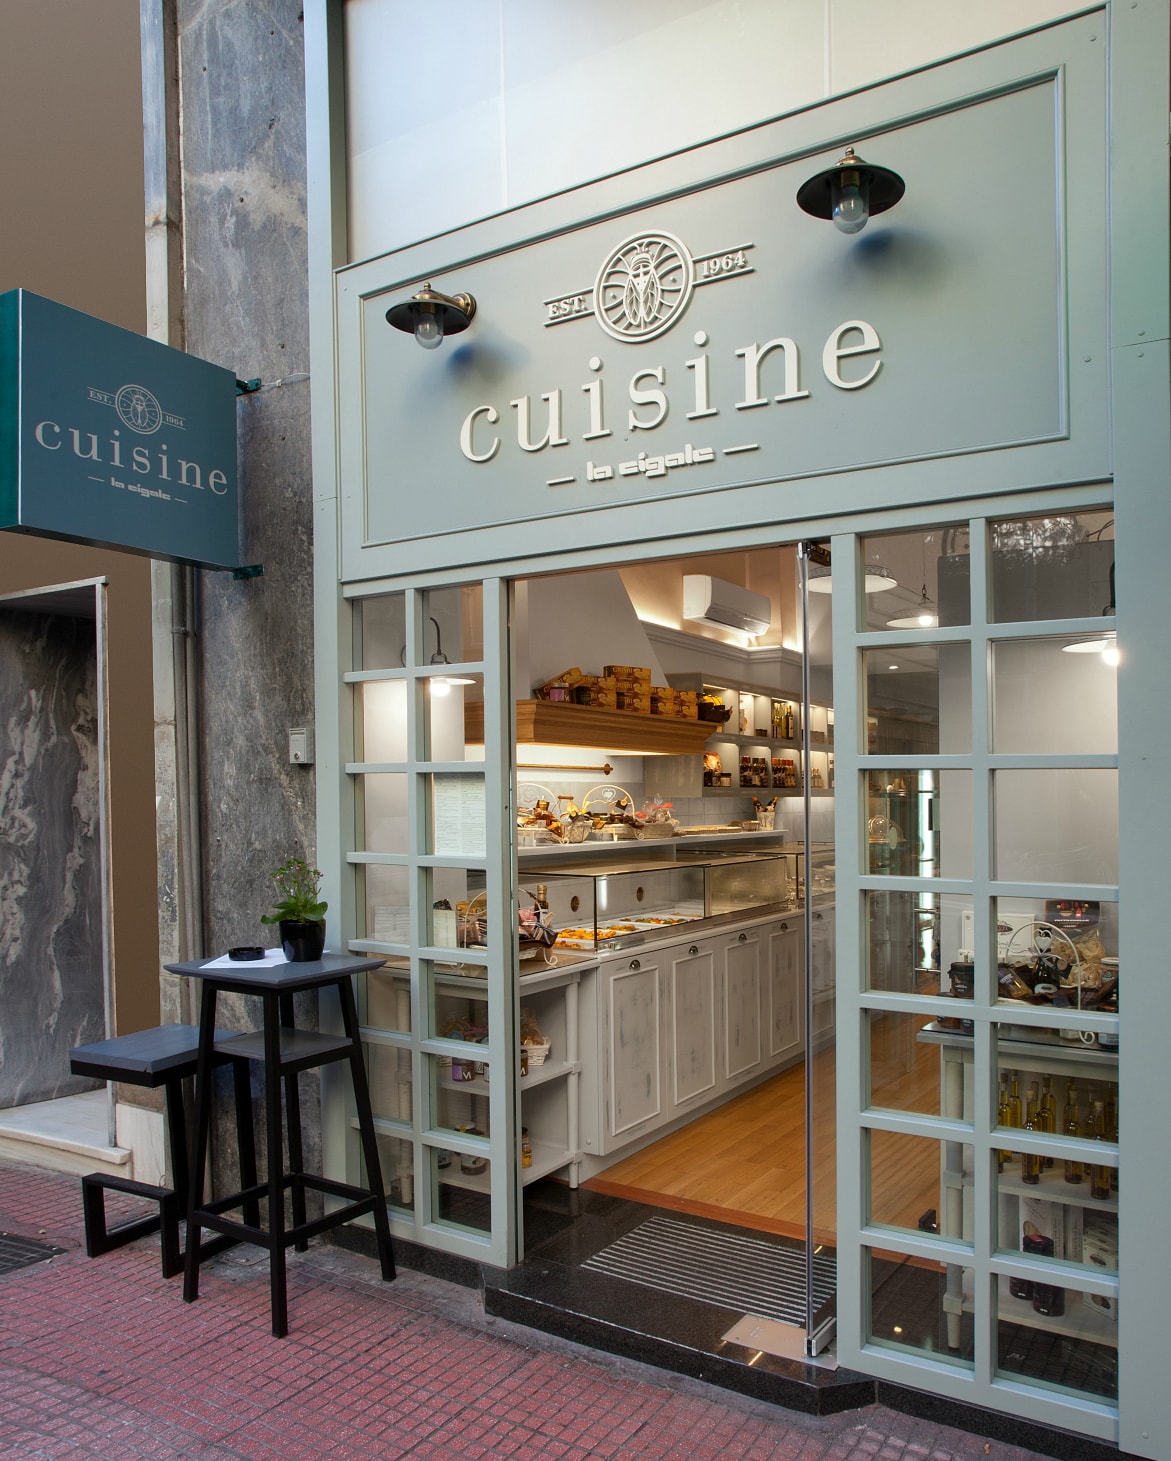 Cuisine Store in Kolonaki, Athens, boasting a unique brand identity